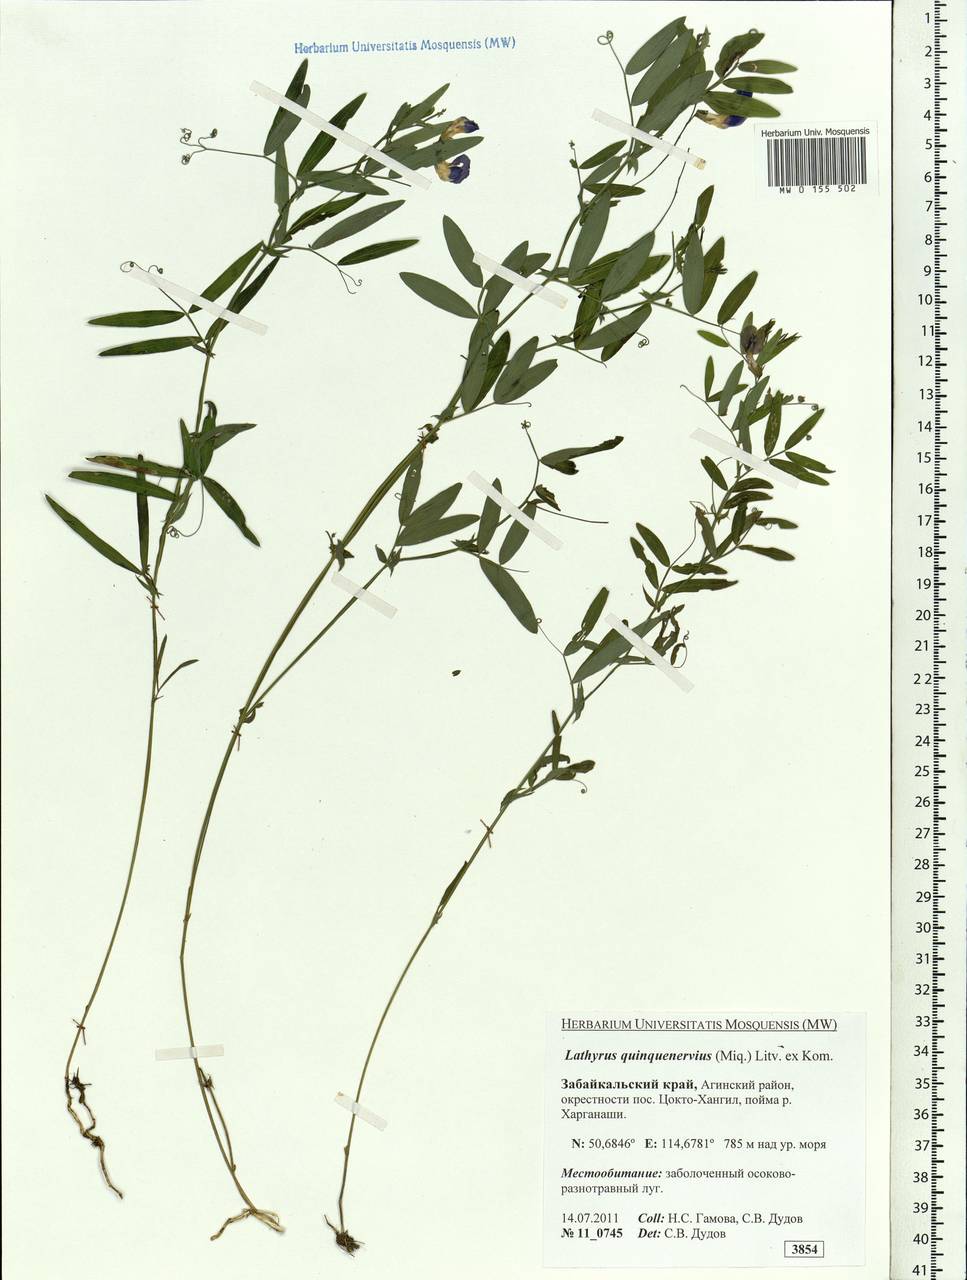 Lathyrus quinquenervius (Miq.)Litv., Siberia, Baikal & Transbaikal region (S4) (Russia)